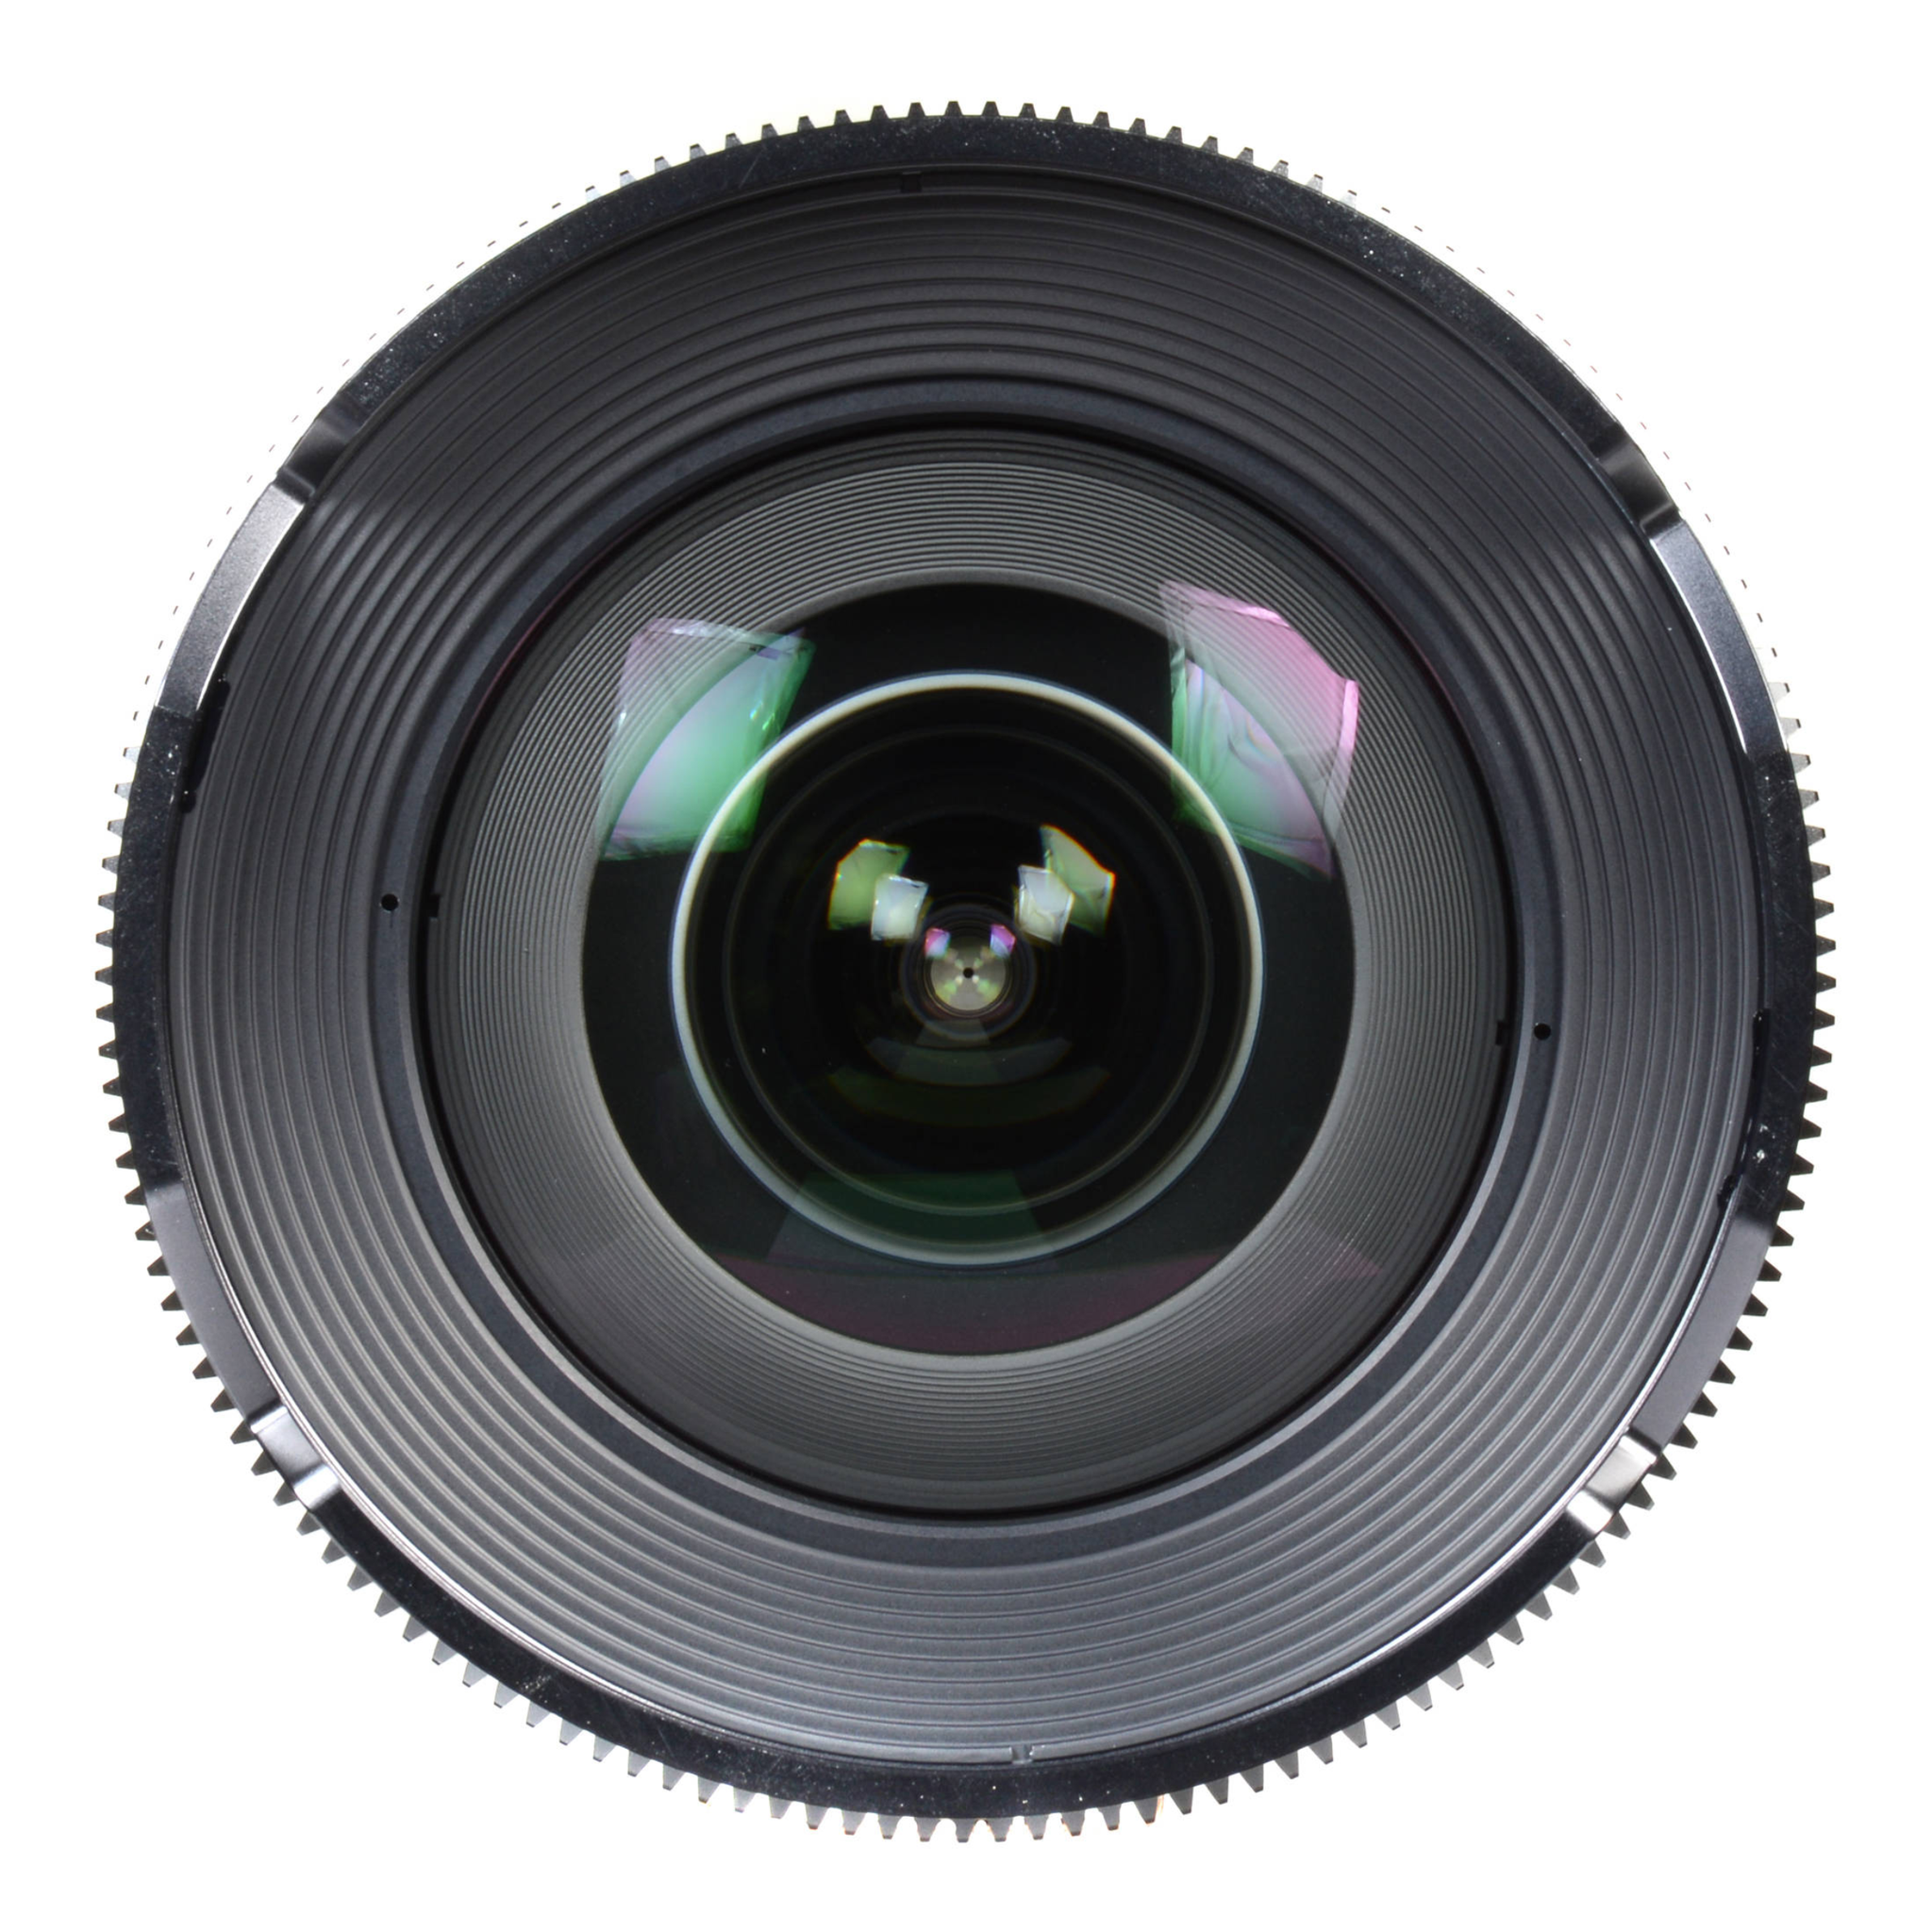 Samyang XEEN 14mm T3.1-Camera Lenses-futuromic